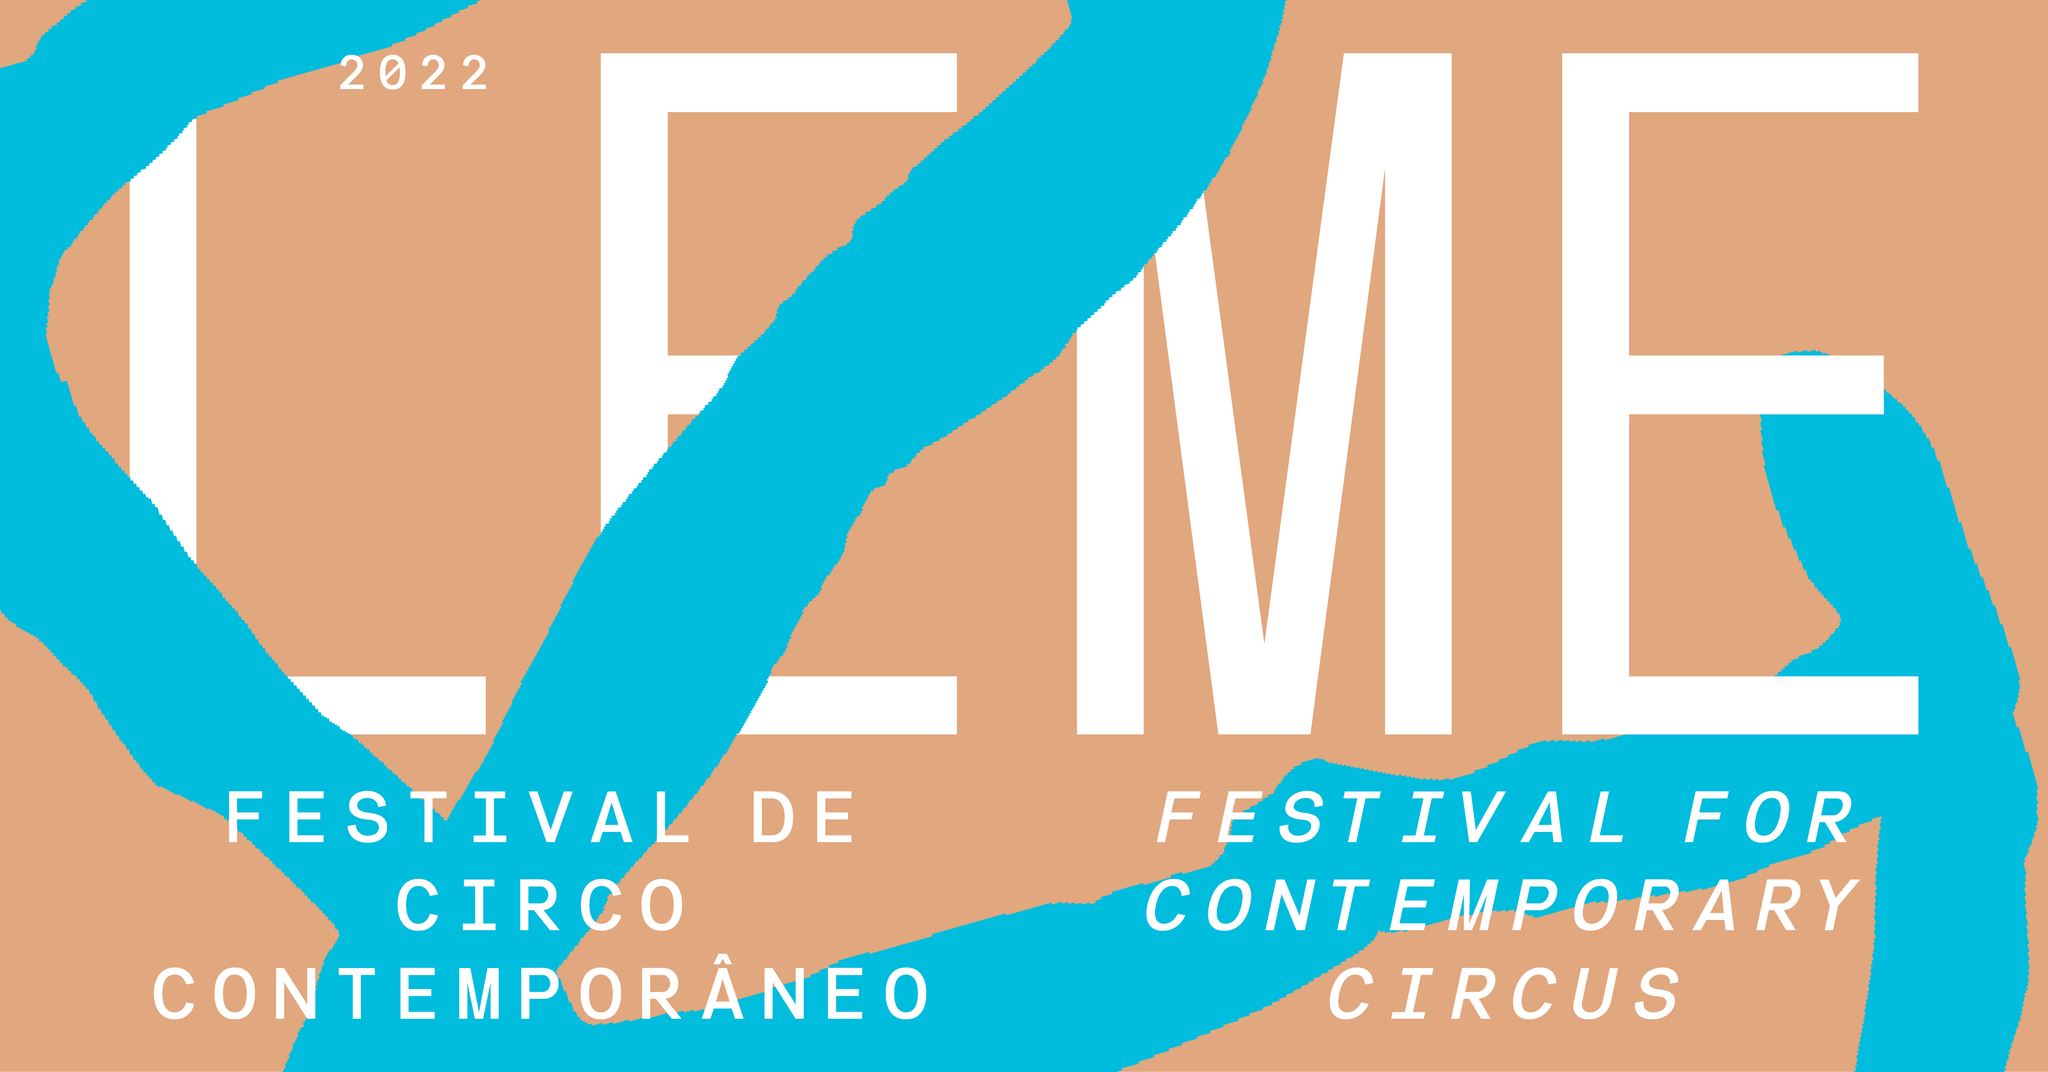 LEME Festival de Circo Contemporâneo e Criação Artística em Espaços não Convencionais 2022